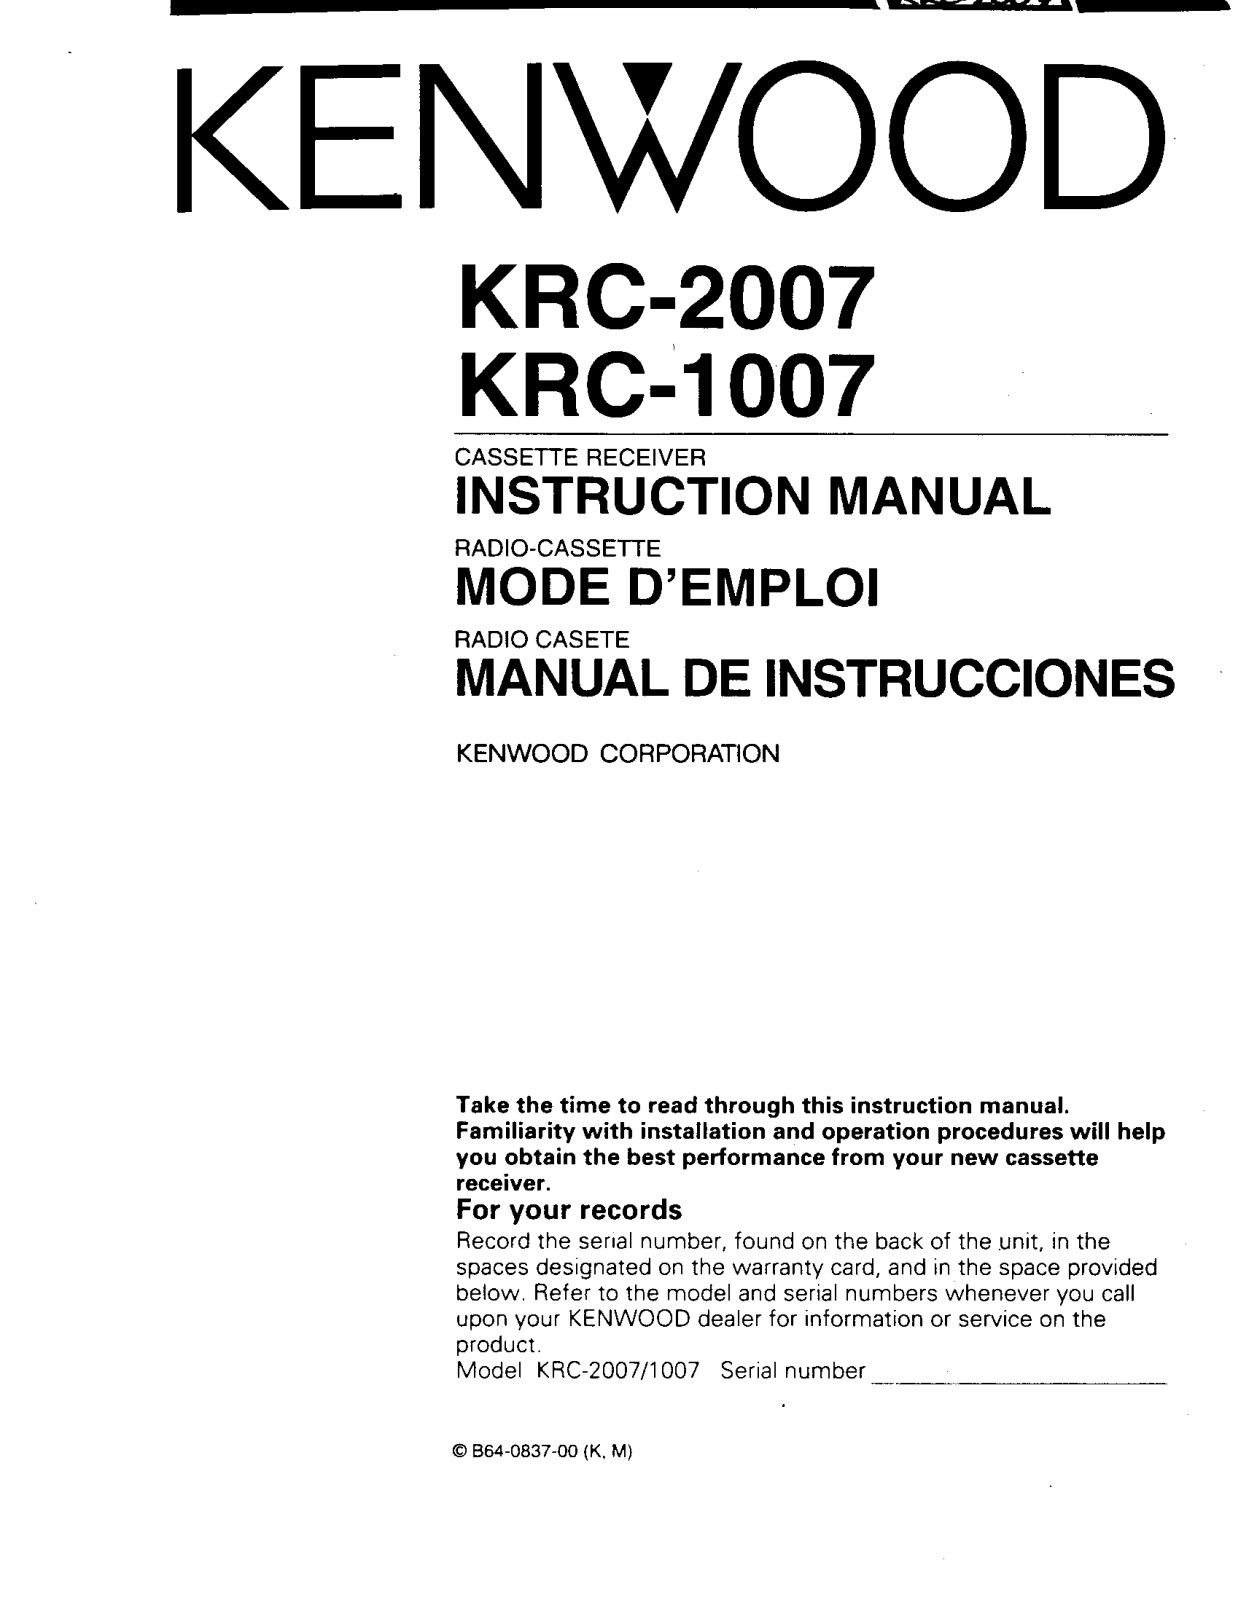 Kenwood KRC-2007, KRC-1007 Owner's Manual